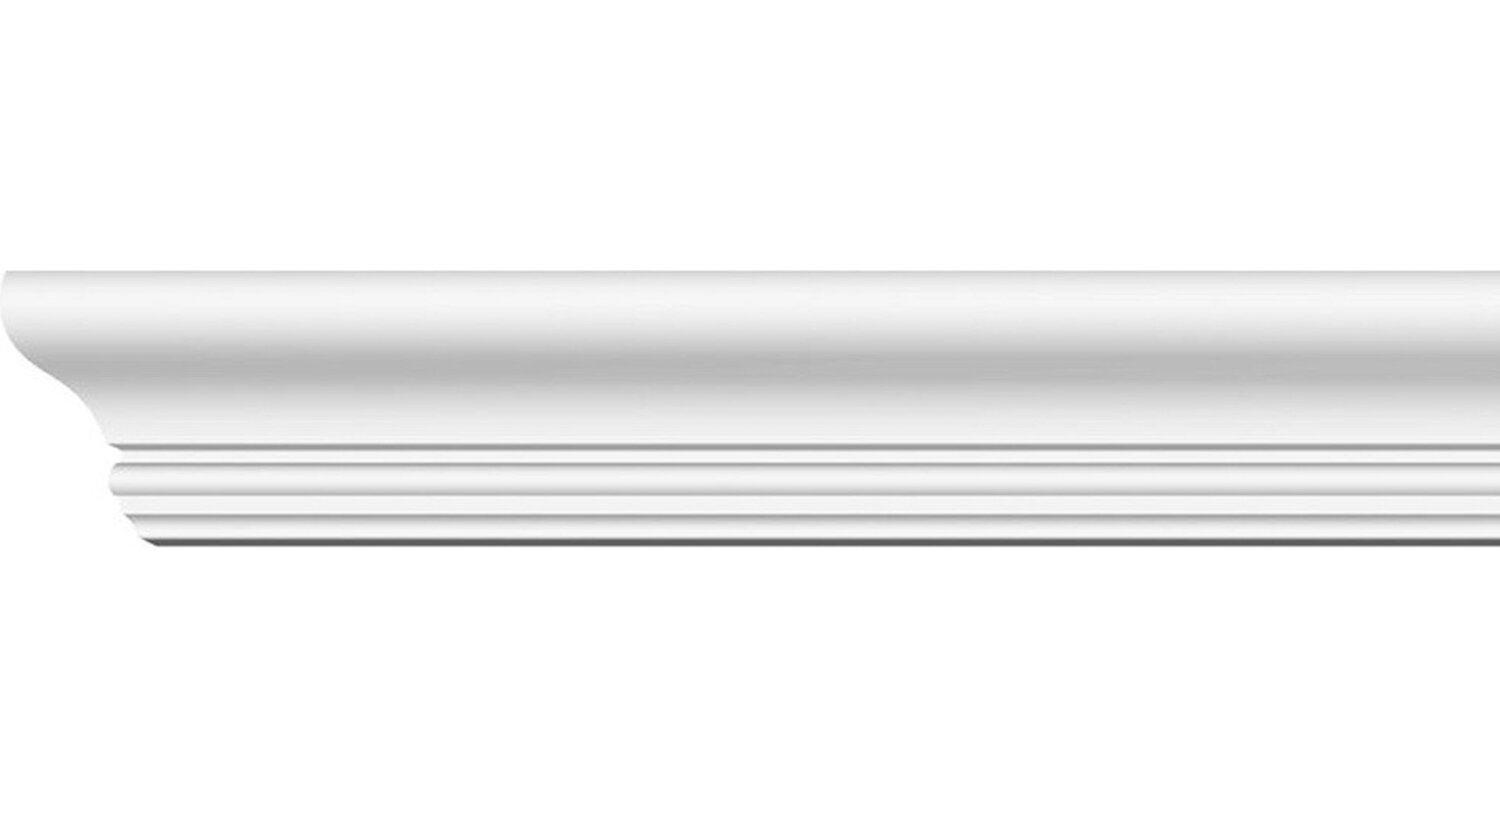 Плинтус потолочный экструзионный Формат диагональ 60мм 2м арт.06013Е  для натяжного потолка